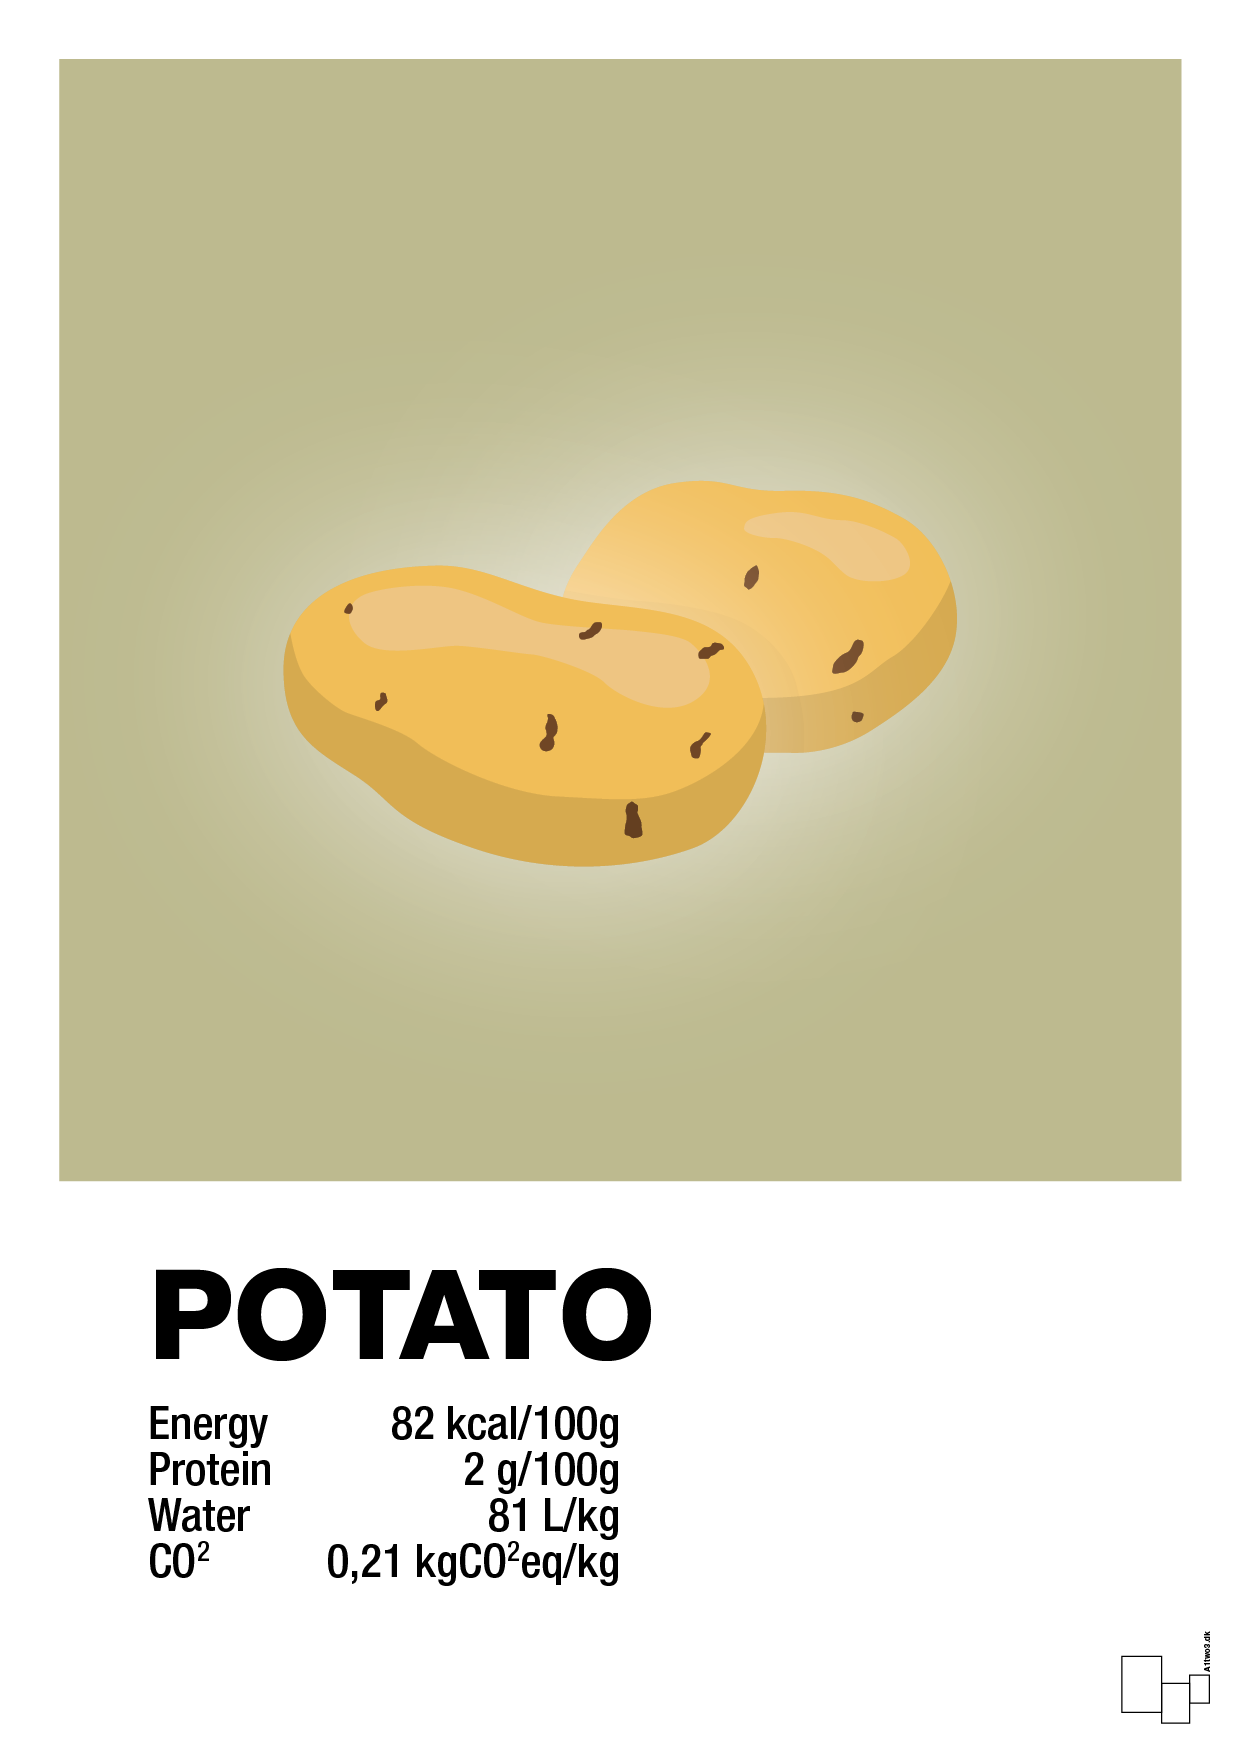 potato nutrition og miljø - Plakat med Mad & Drikke i Back to Nature